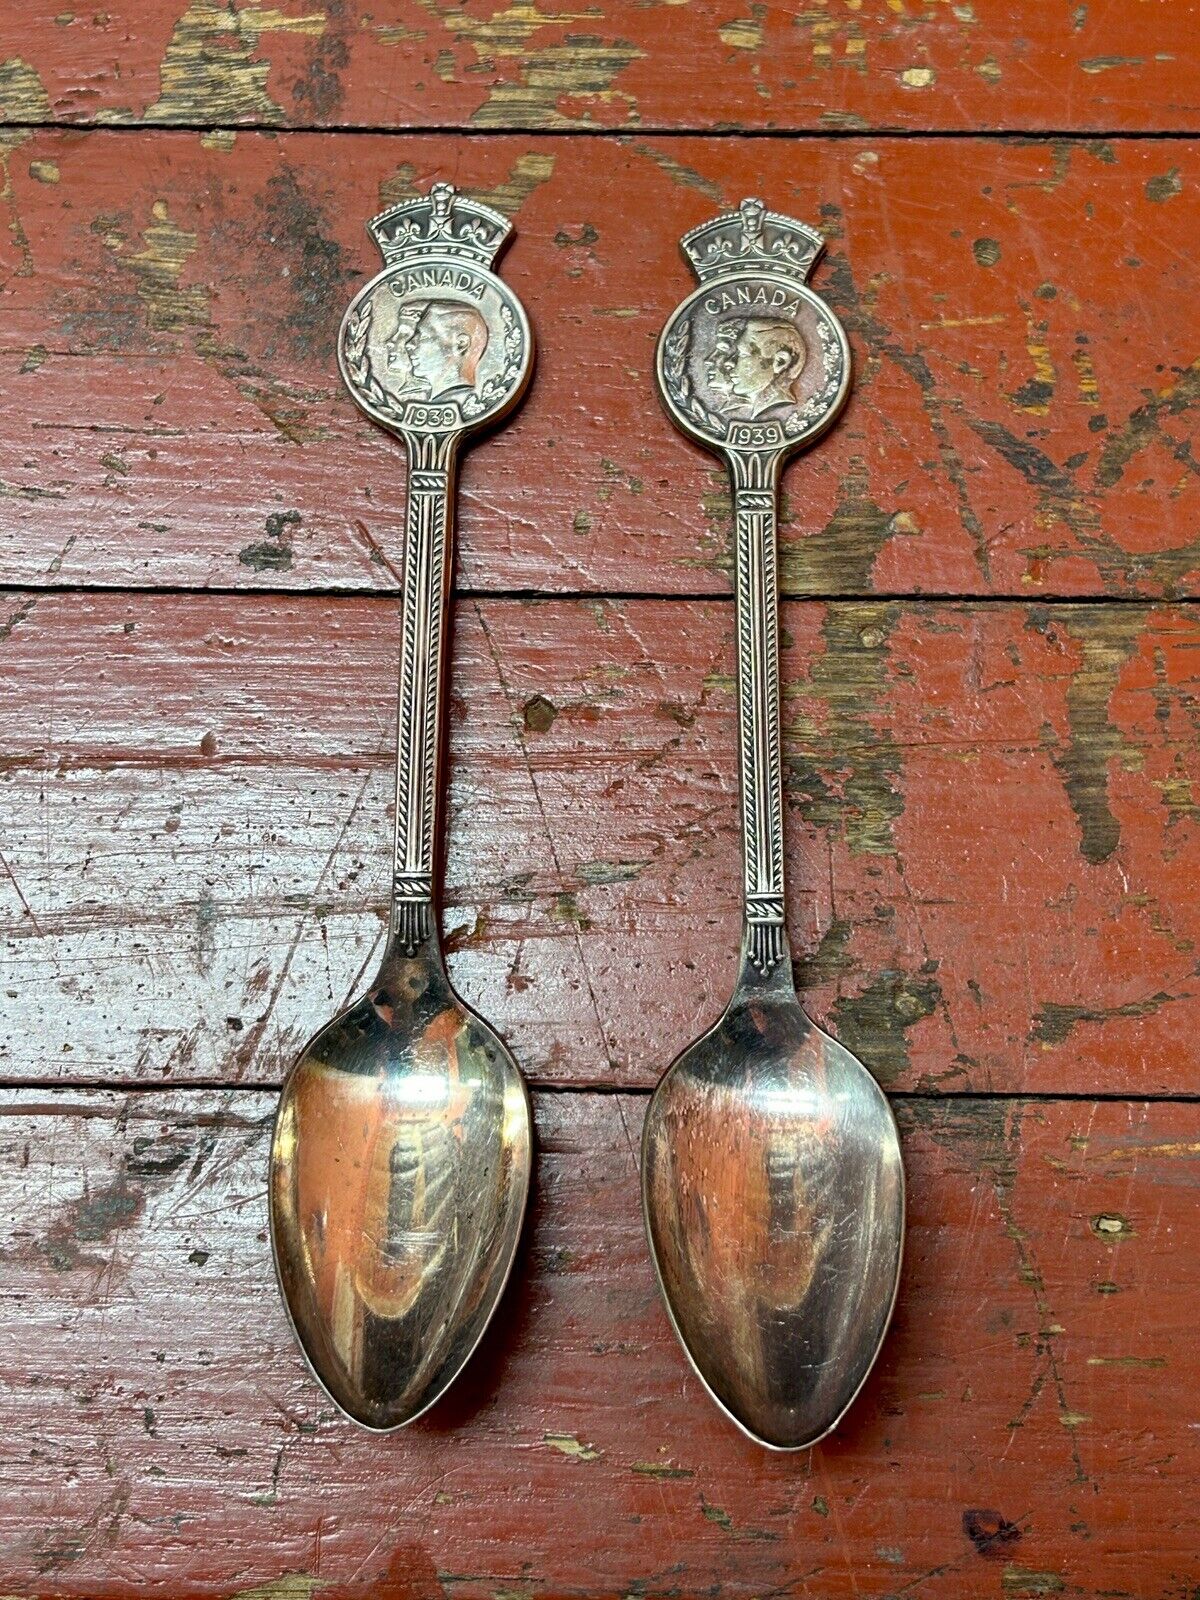 1939 King George VI & Queen Elizabeth Royal Visit Canada Silver Souvenir Spoons